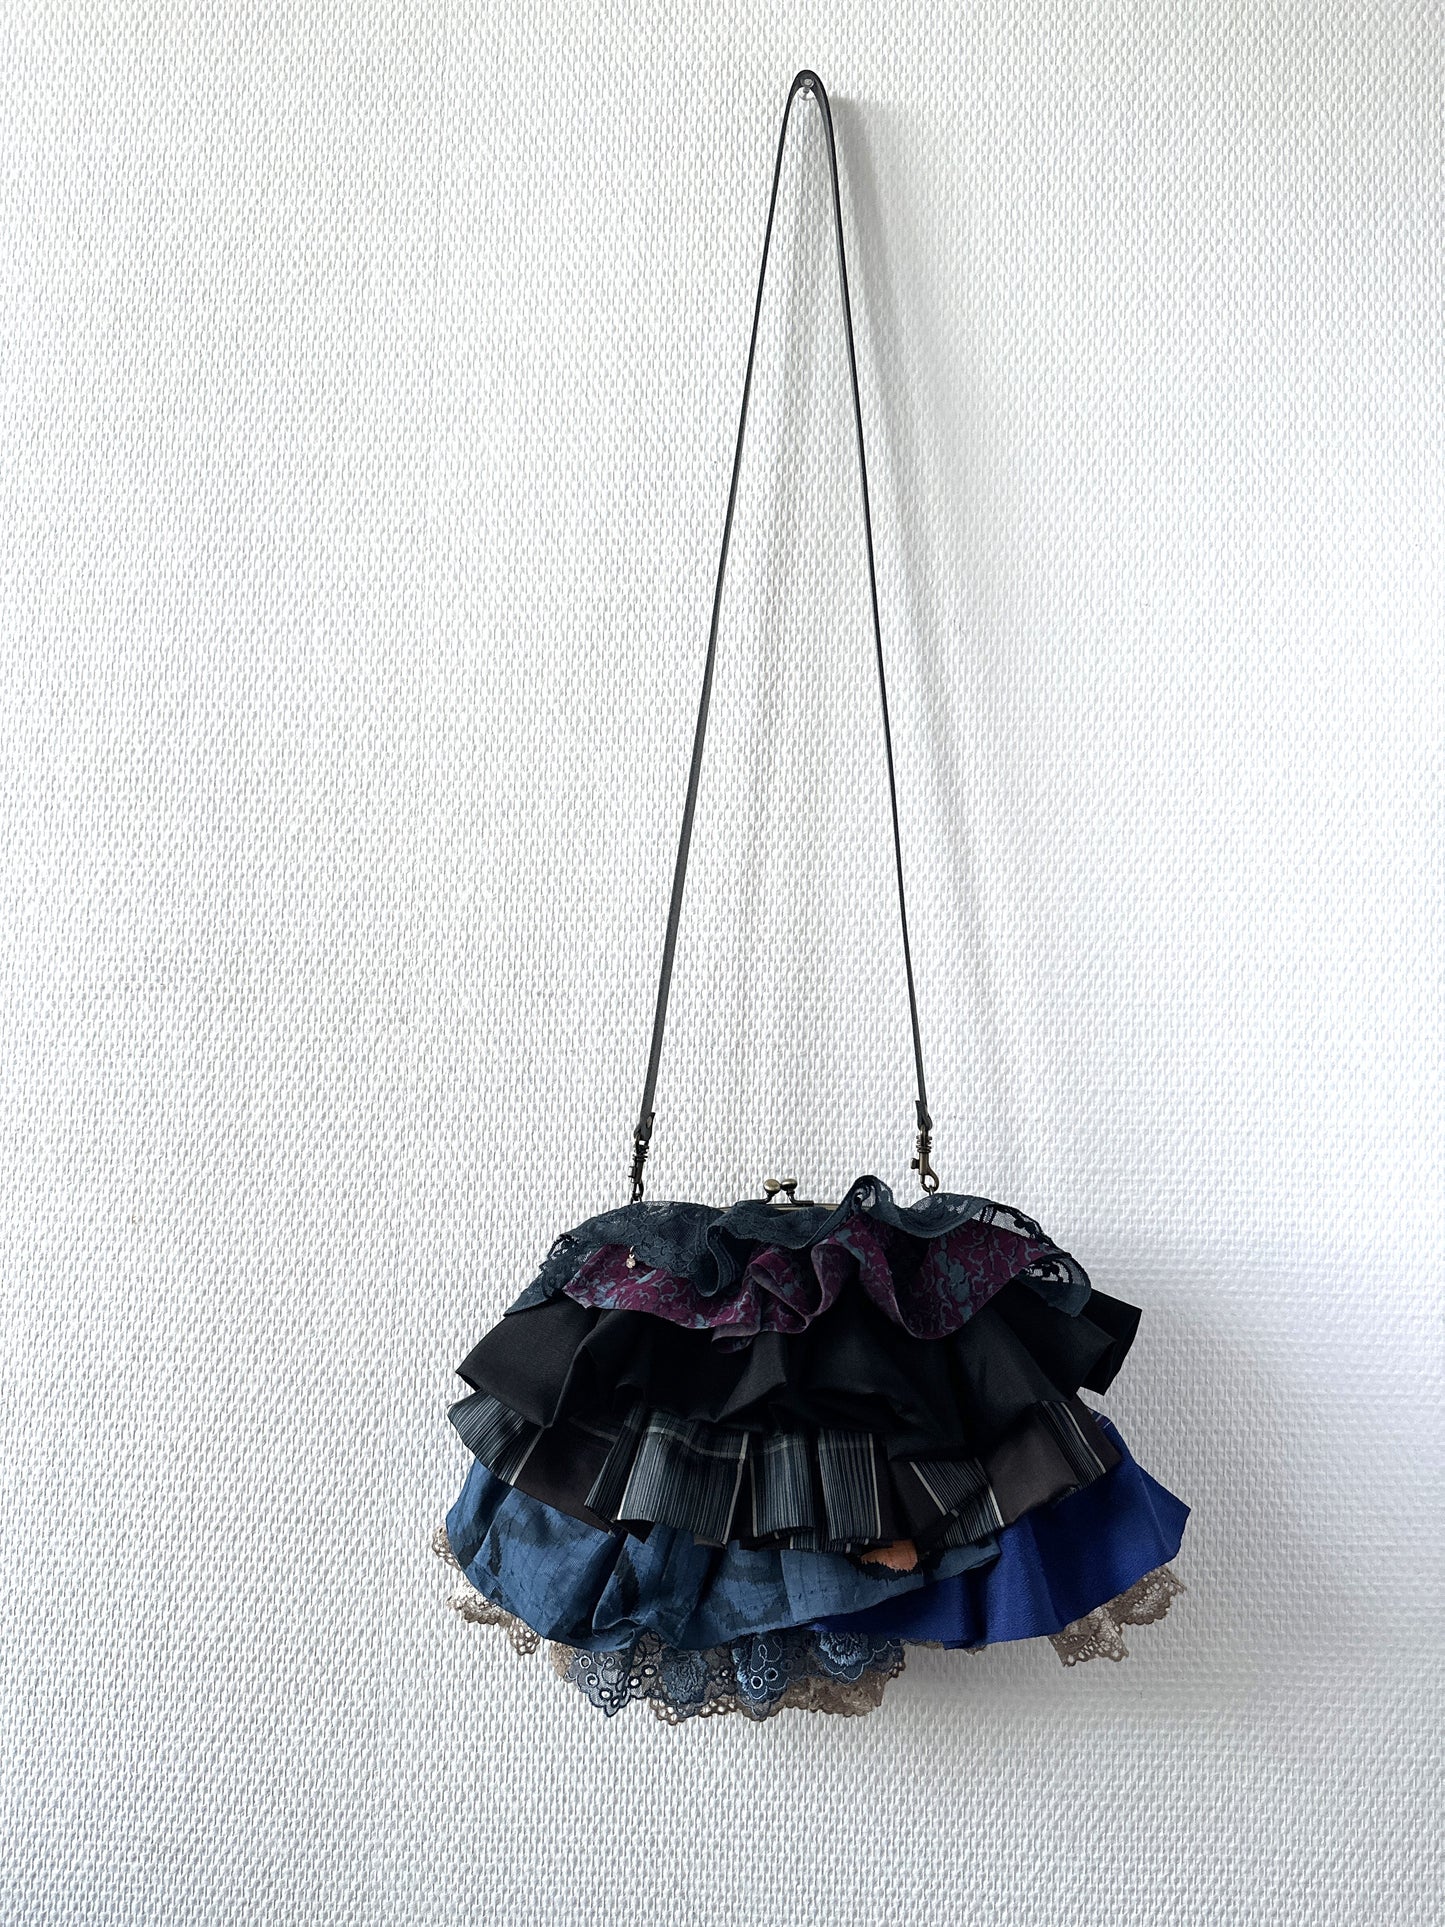 【Gogatsudo】 3way-handbag / marine, indigo, meisen antique, fioritures, embrayage, pochette, sac japonais, sac à bandoulière, cadeaux japonais